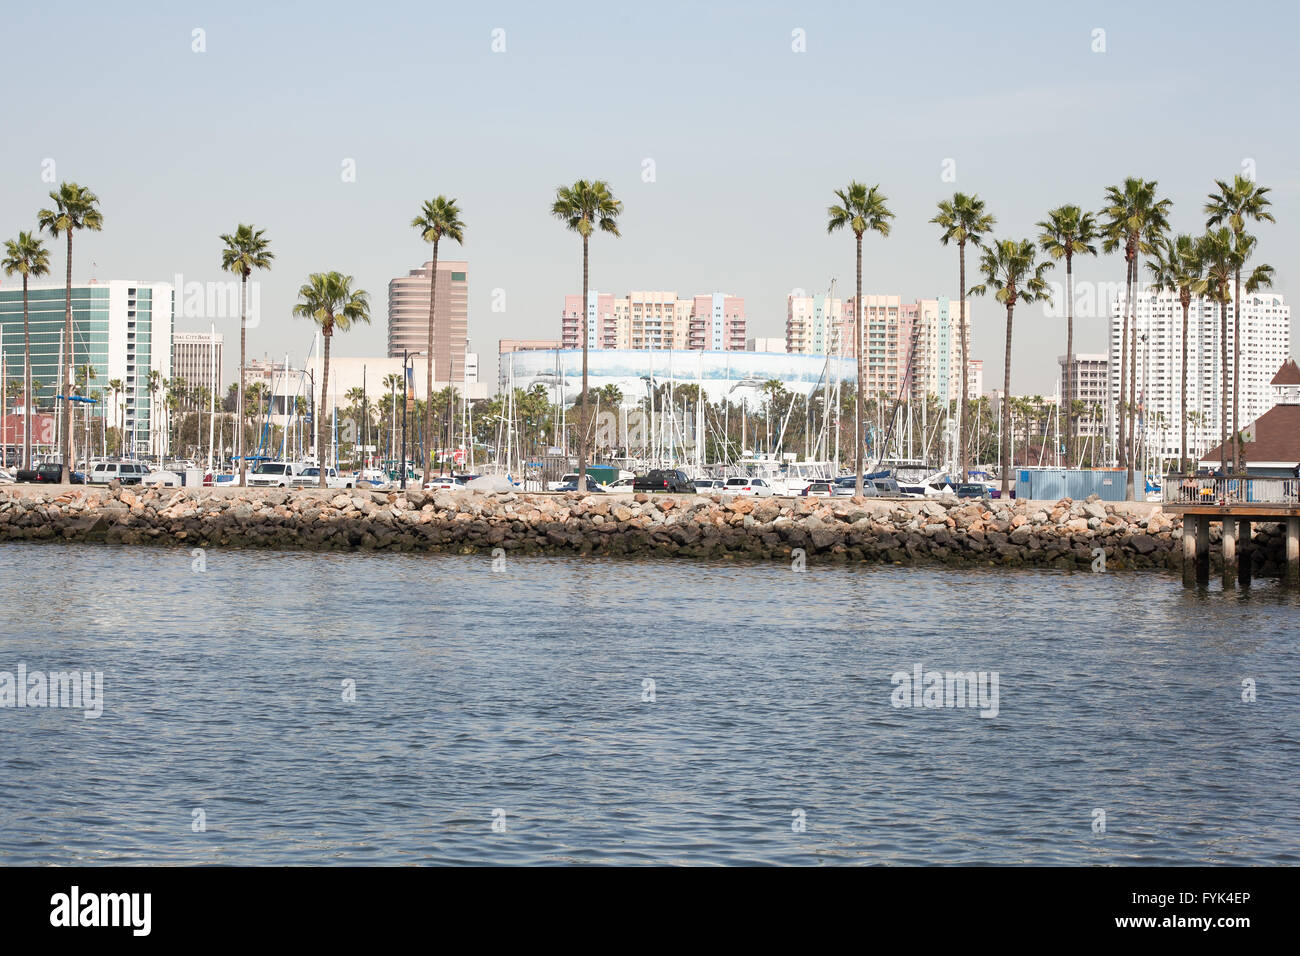 Le beau rivage de yachts, voiliers, des palmiers et de l'architecture afficher la ville de Long Beach, CA Banque D'Images